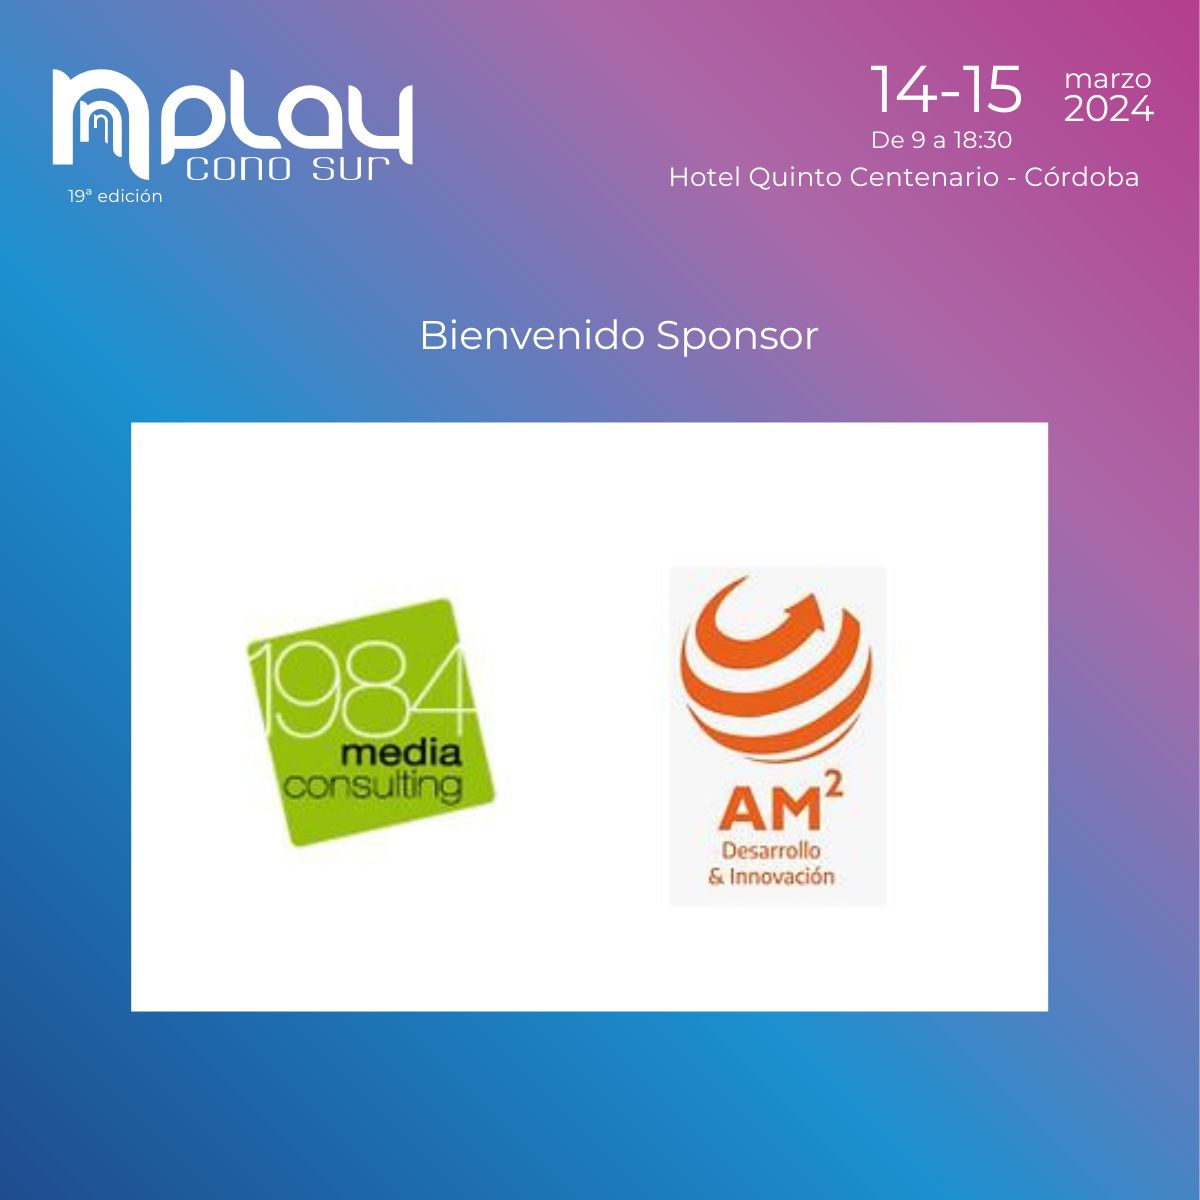 #NPlay
1984 Media Consulting y AM Desarrollo & Innovación son content partners de NPlay Cono Sur 2024, organizado por Grupo Convergencia.
🗓 Los 14 y 15 de marzo, en #Córdoba.
-Conozca la agenda y oradores de ambos días: nplay.convergencia.com/agenda
#TIC #ContentPartners